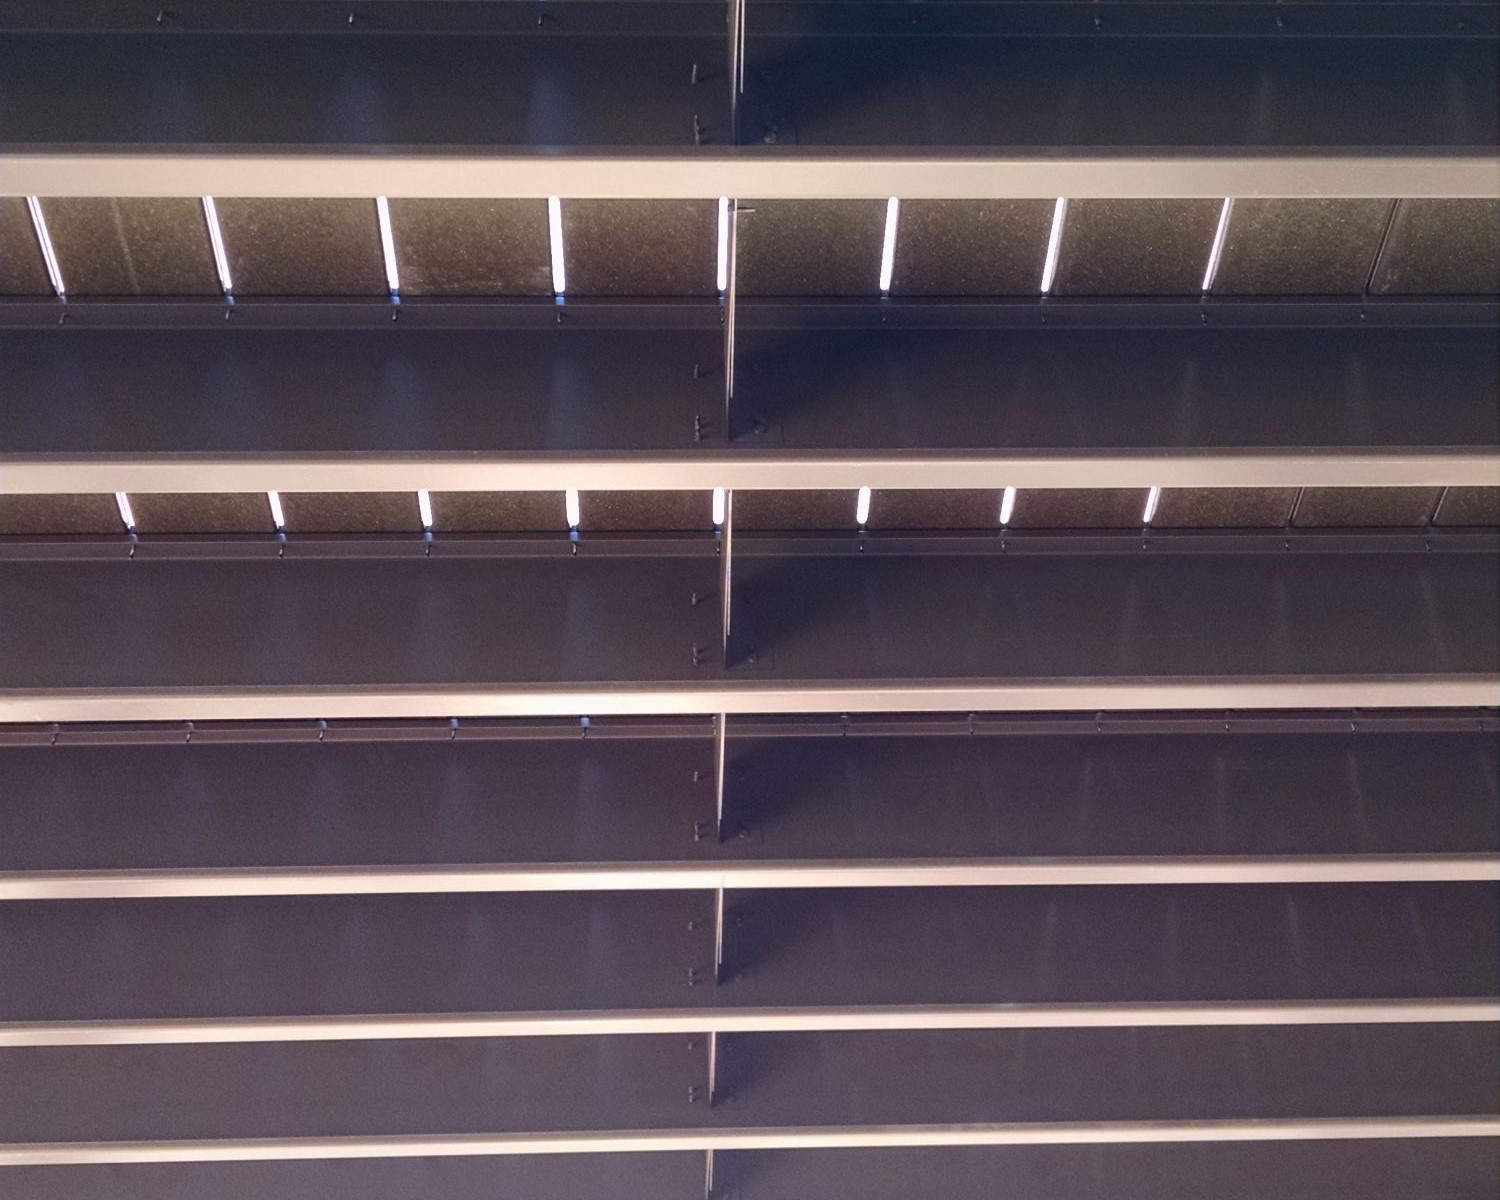 Powder coated steel deck framing as seen from below